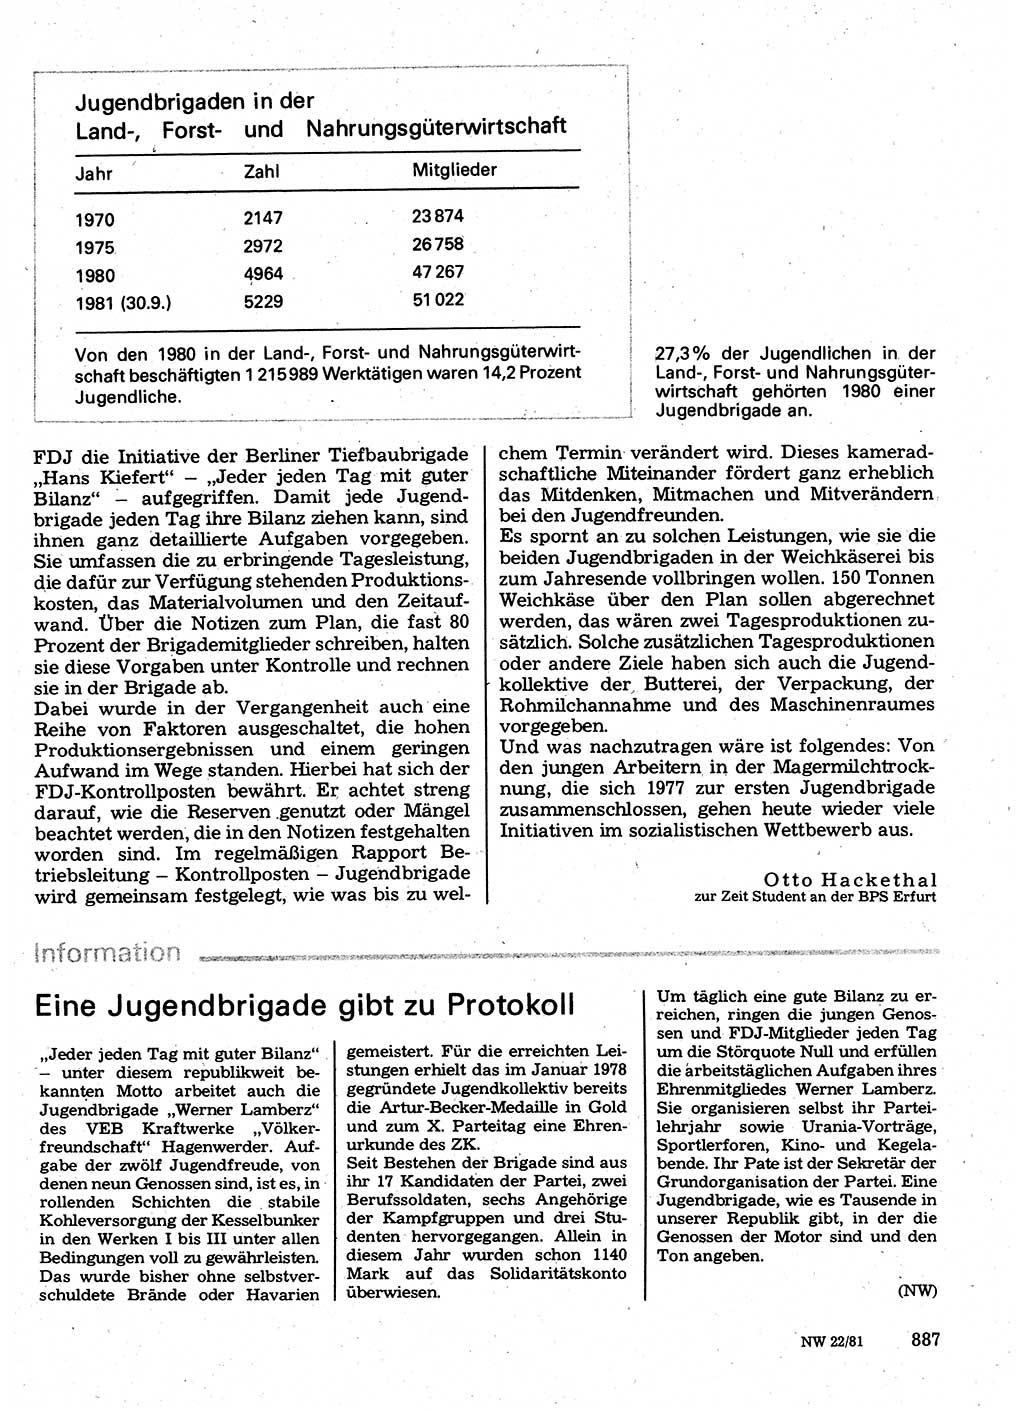 Neuer Weg (NW), Organ des Zentralkomitees (ZK) der SED (Sozialistische Einheitspartei Deutschlands) für Fragen des Parteilebens, 36. Jahrgang [Deutsche Demokratische Republik (DDR)] 1981, Seite 887 (NW ZK SED DDR 1981, S. 887)